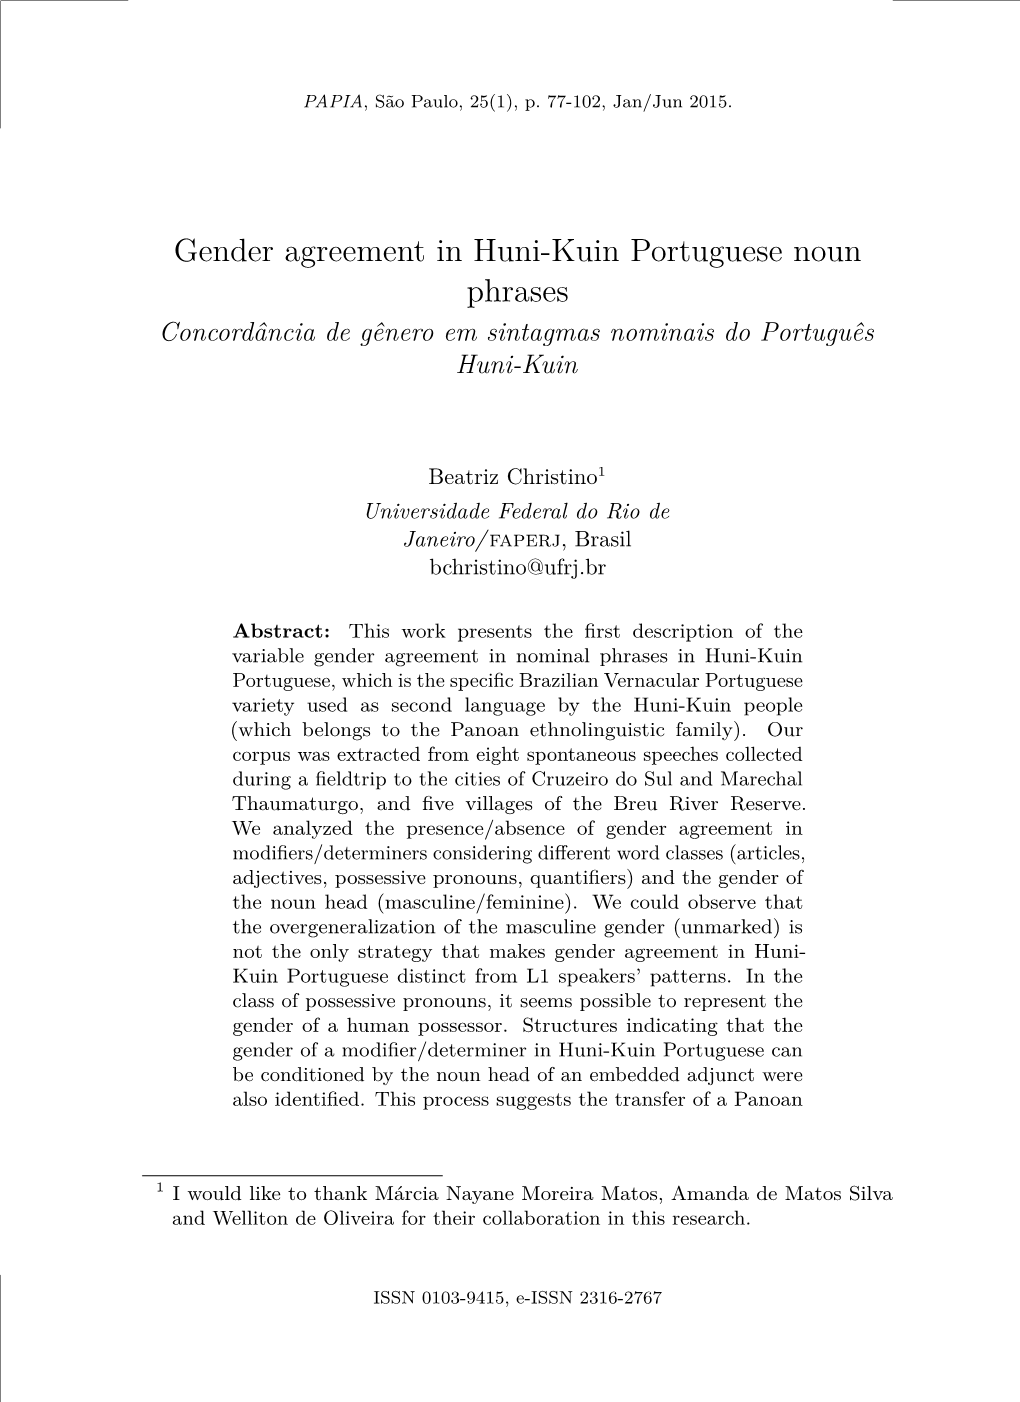 Gender Agreement in Huni-Kuin Portuguese Noun Phrases Concordância De Gênero Em Sintagmas Nominais Do Português Huni-Kuin